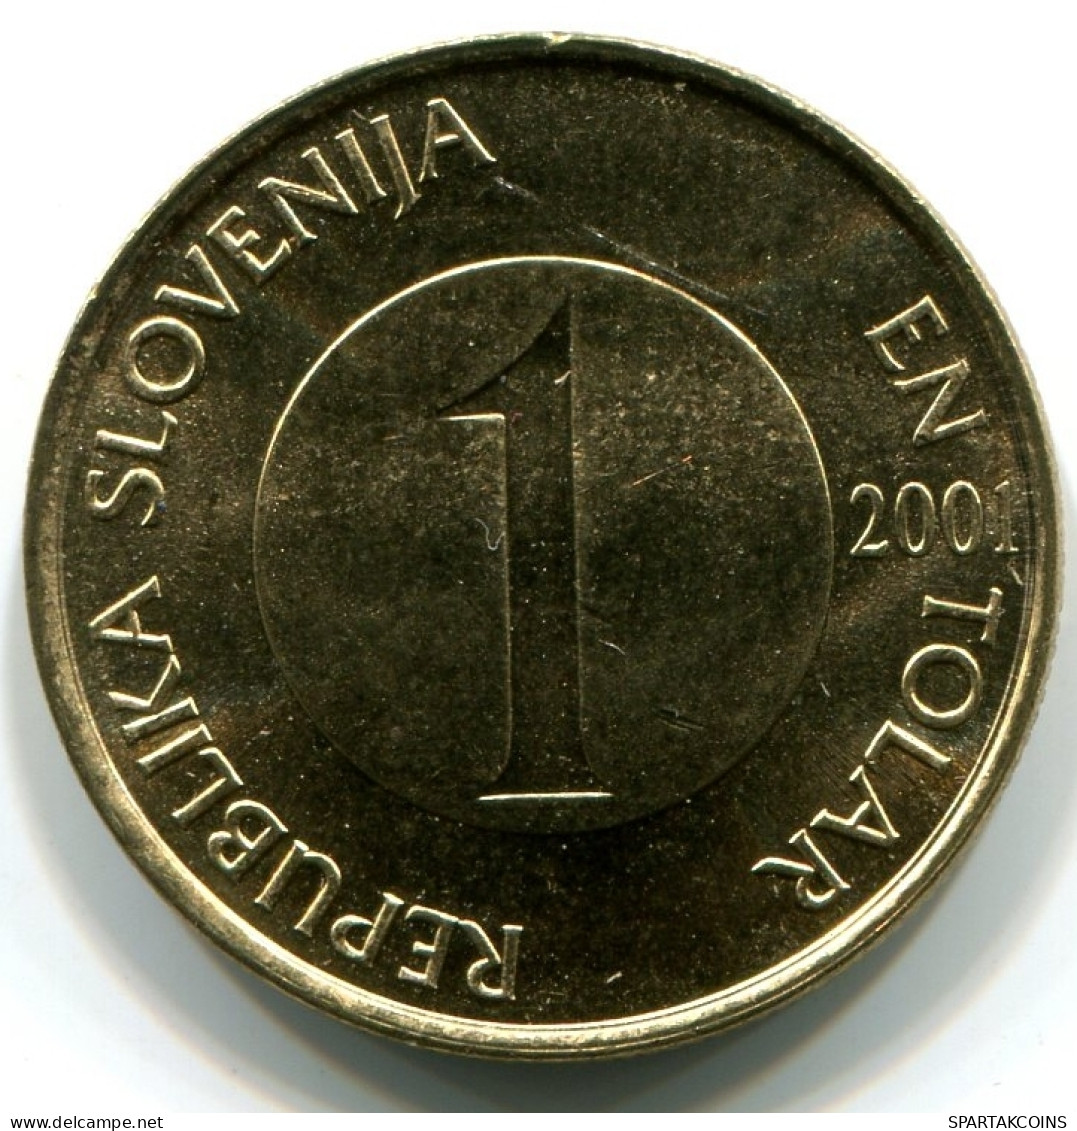 1 TOLAR 2001 SLOVENIA UNC Fish Coin #W11302.U - Slovenia